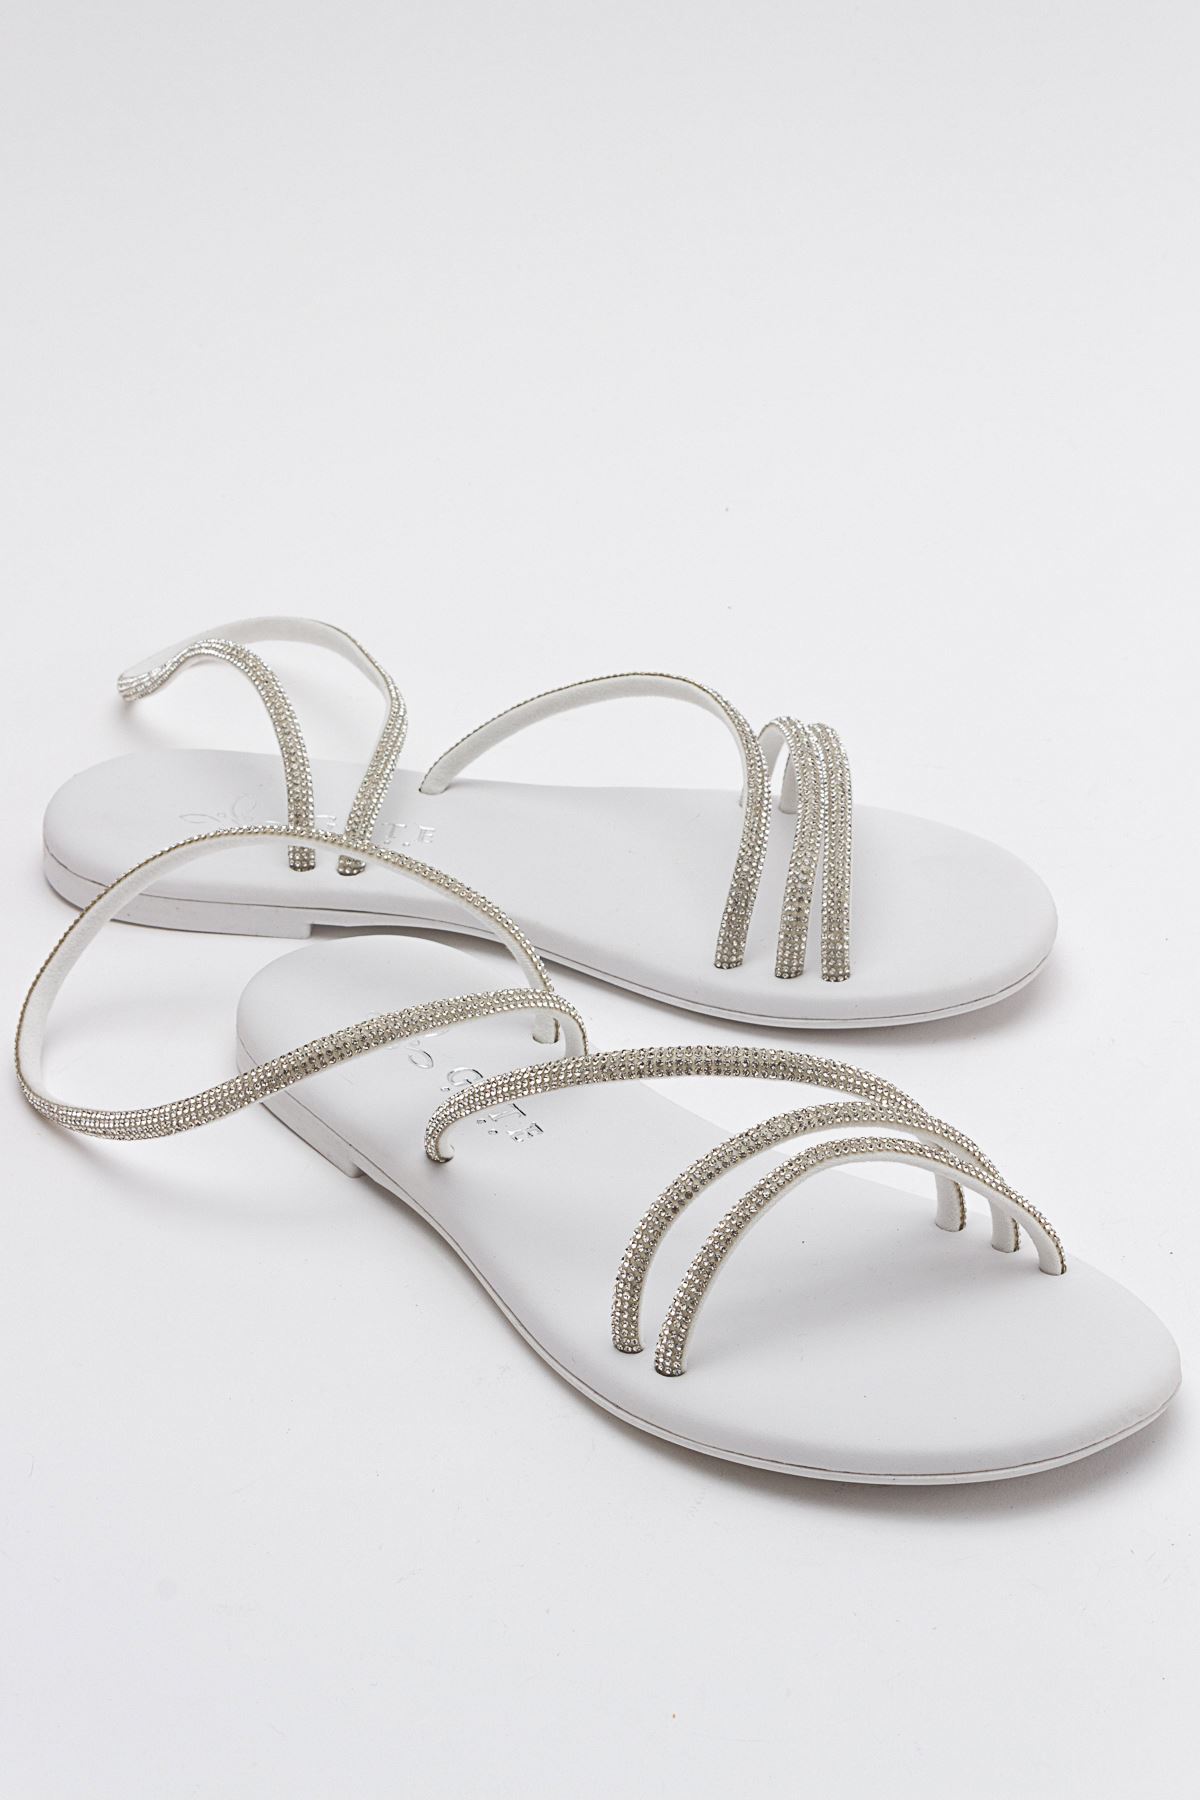 Breta Kristal Parlak Taşlı Alçak Tabanlı Kadın Sandalet Gate Shoes-Gümüş